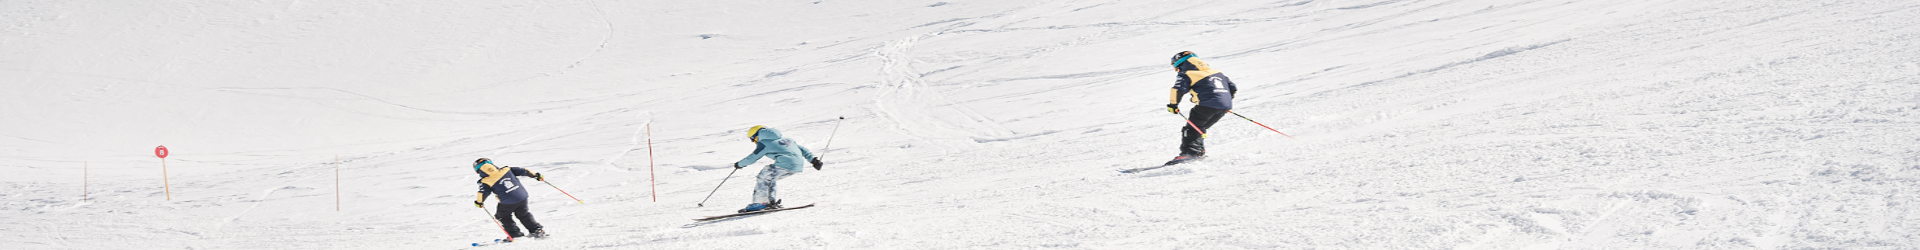 serre-chevalier-briancon-montaña-esqui-invierno-vacaciones-alquiler-apartamento-chalet-clases-esqui-snowboard